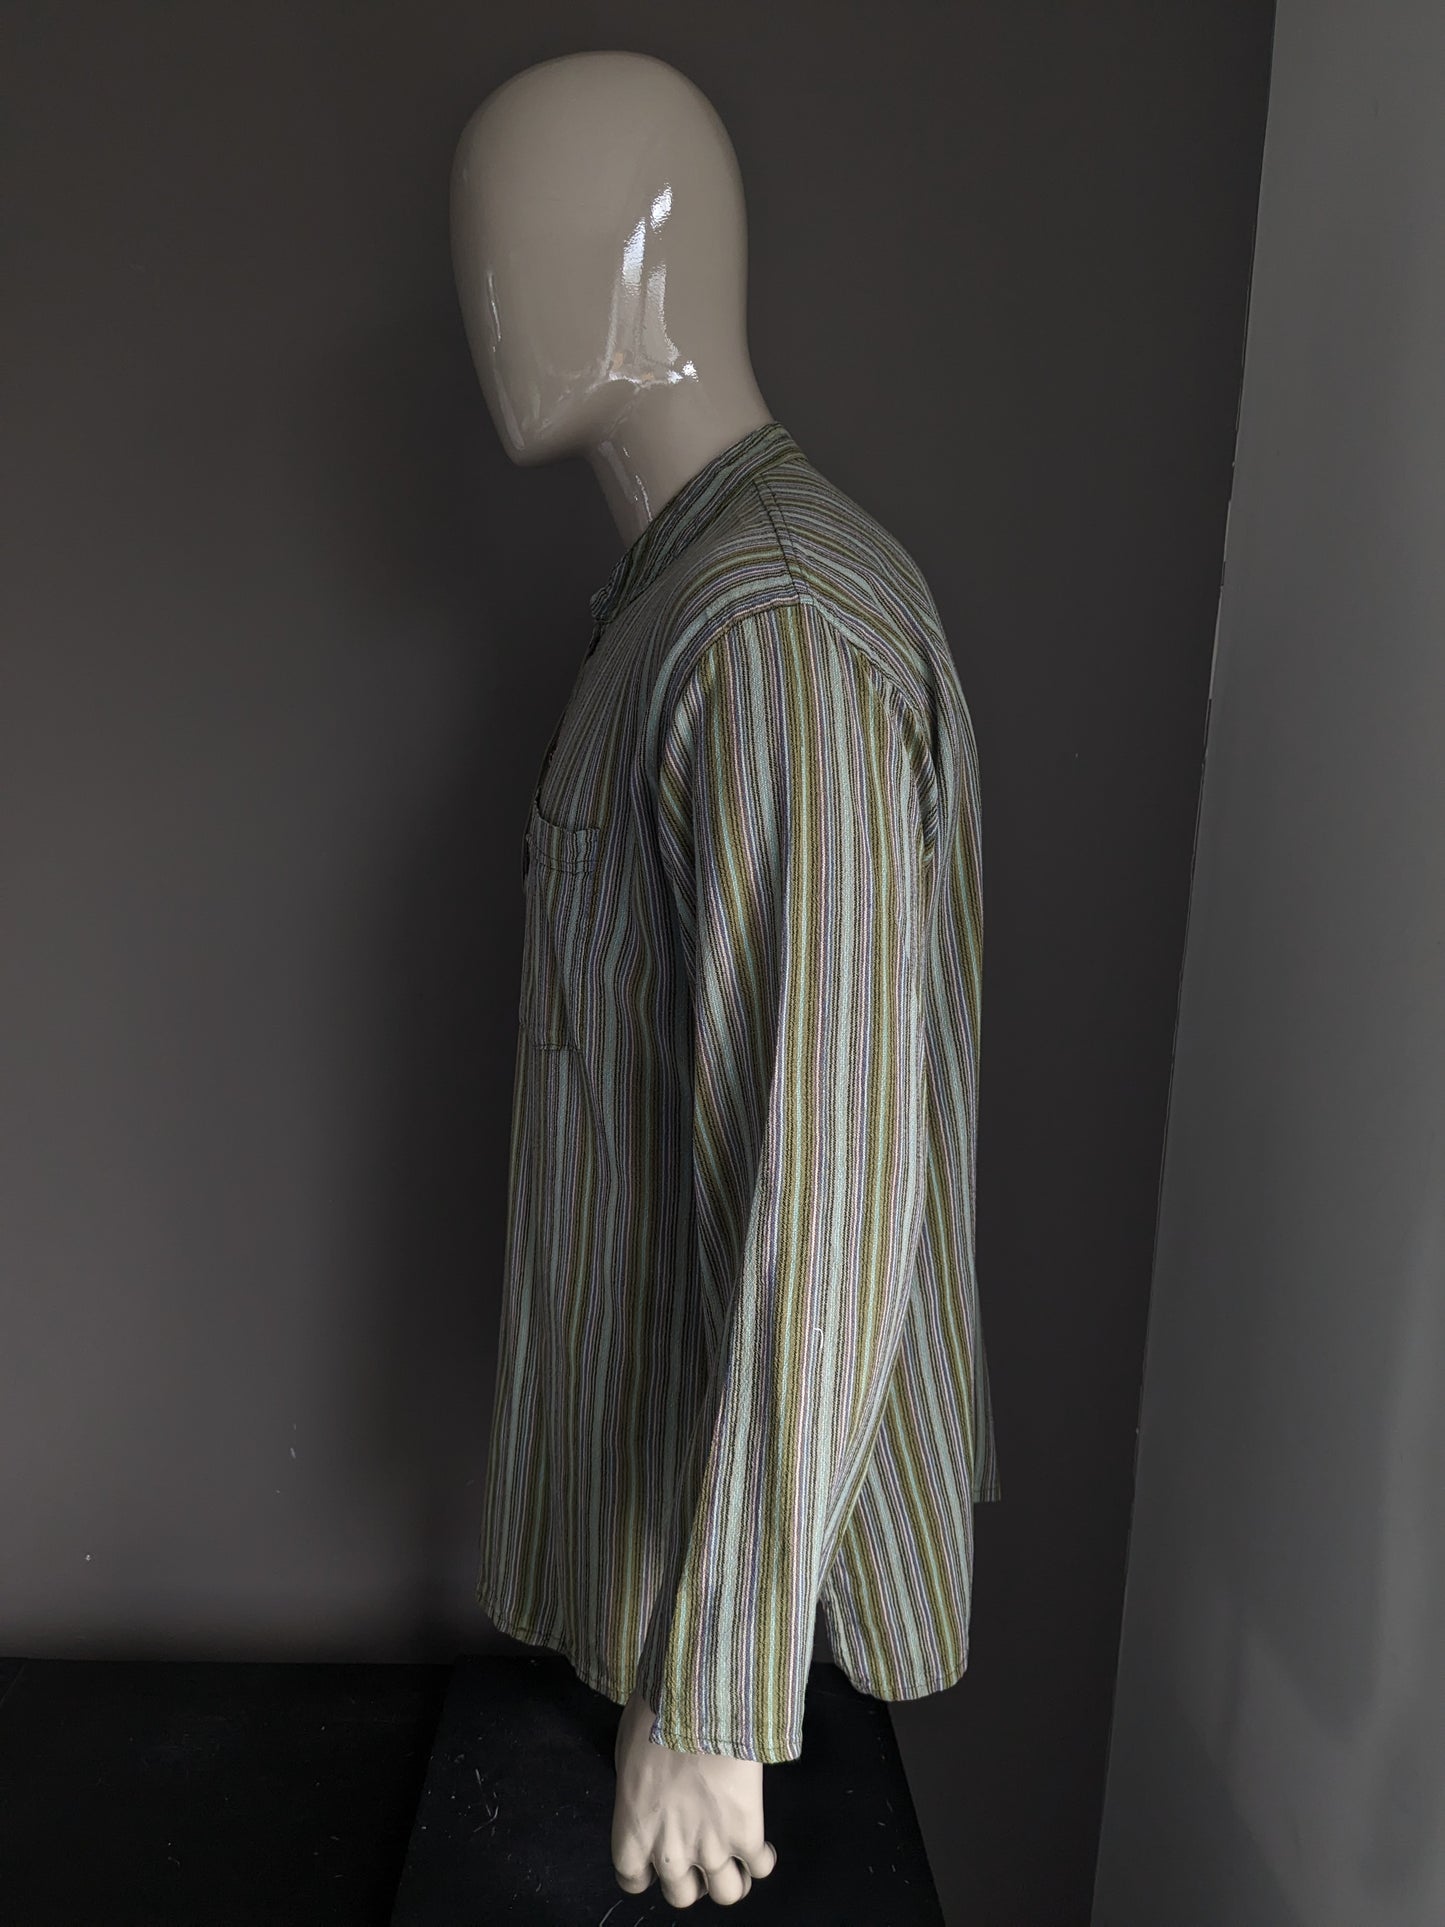 Maglione / camicia da polo vintage con raccolto rialzato / agricoltori / mao. Strisce blu marrone viola verde con borsa. Taglia XL.